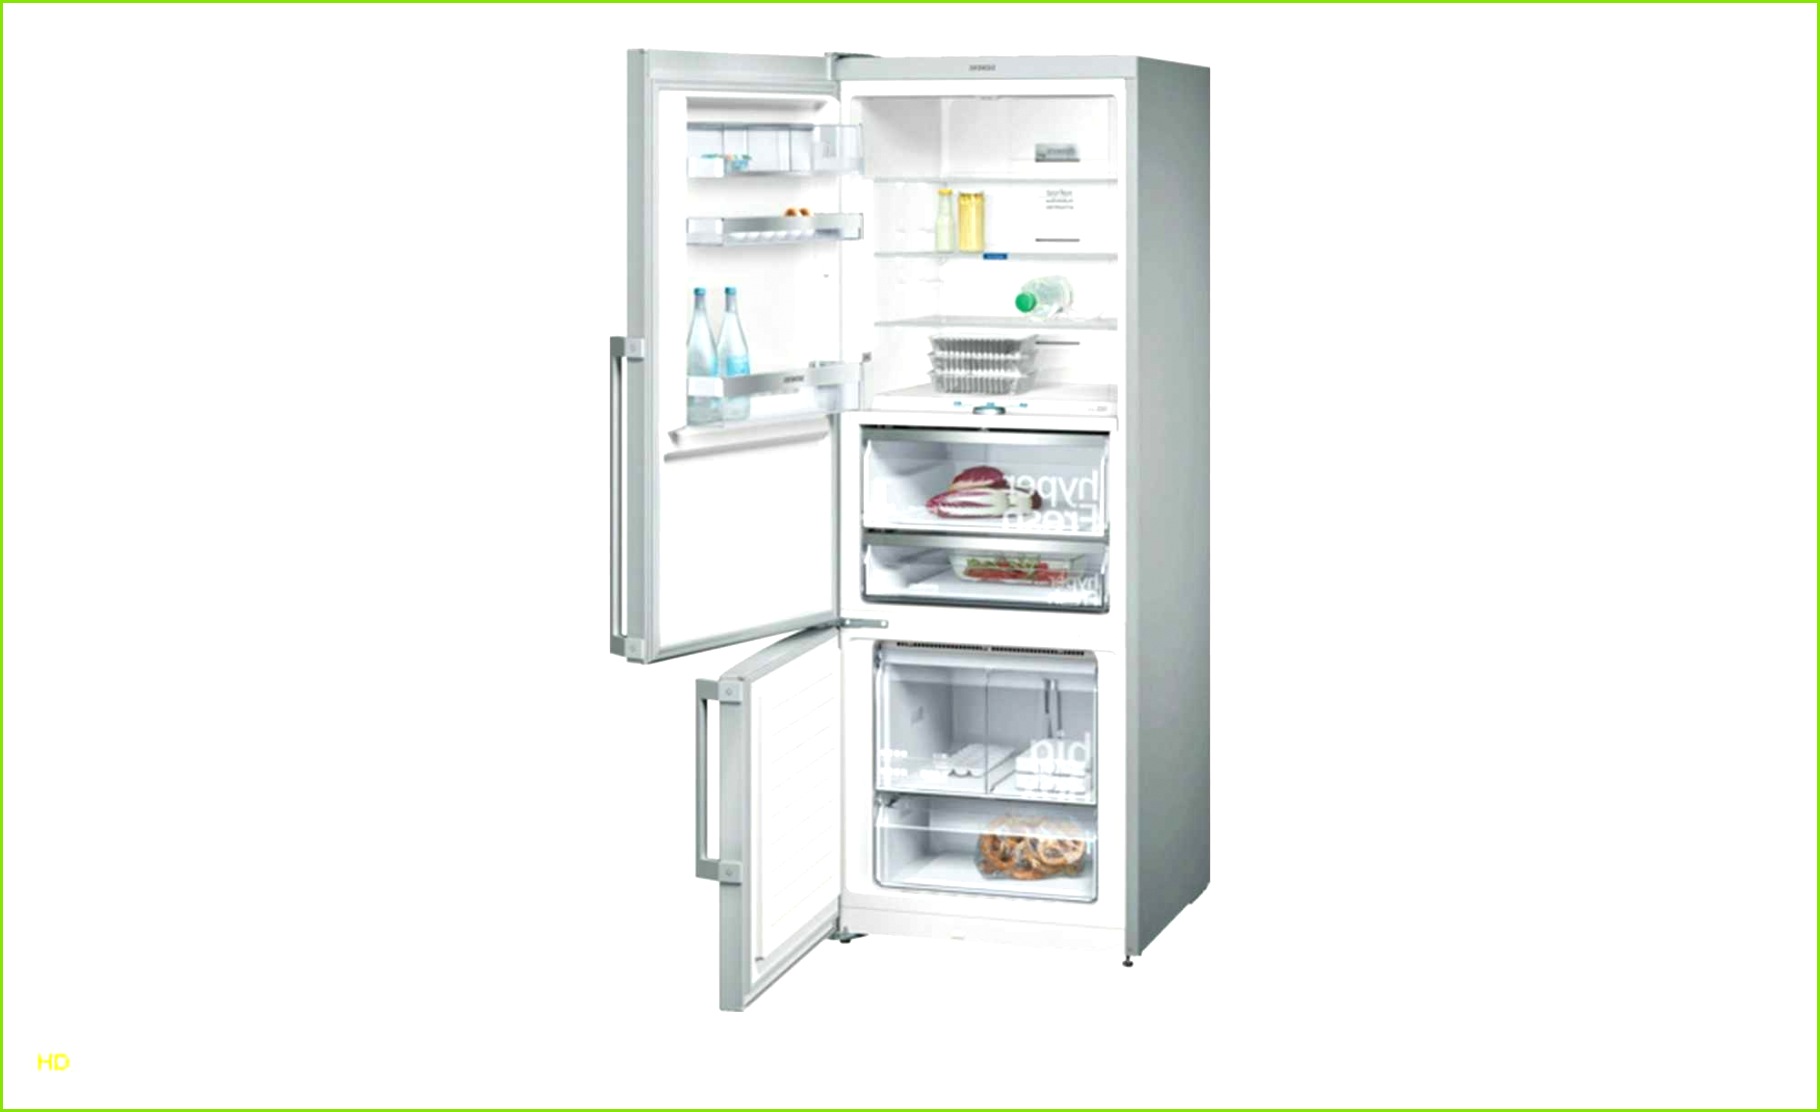 Beau Hygiene Kuche Gastronomie Interior Design Ideas Hygiene Kuche Gastronomie – Temperaturkontrolle Kühlschrank Vorlage